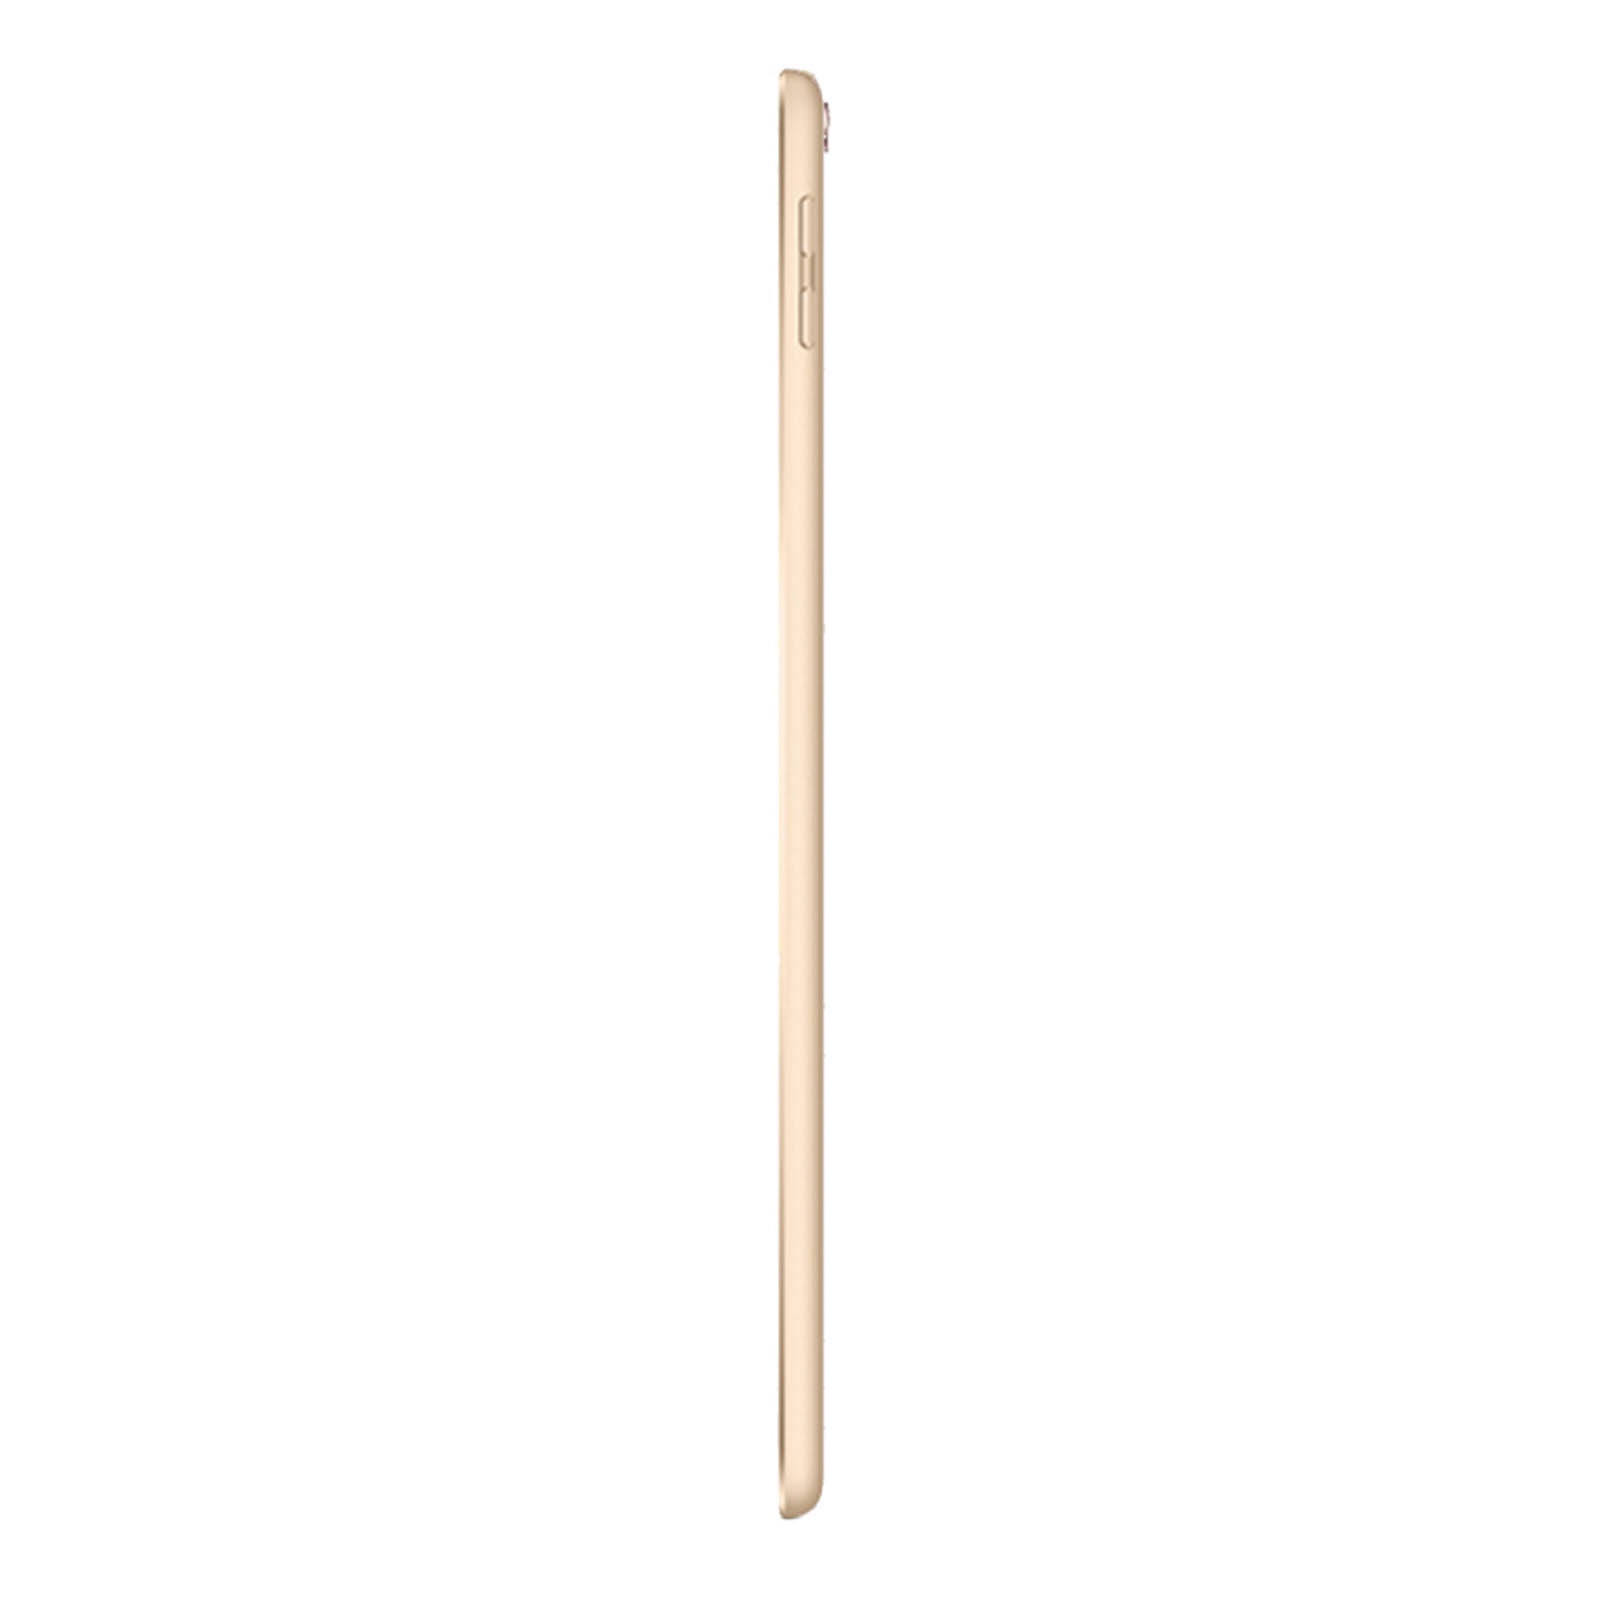 iPad Pro 10.5" 512GB Oro Come Nuovo Sbloccato